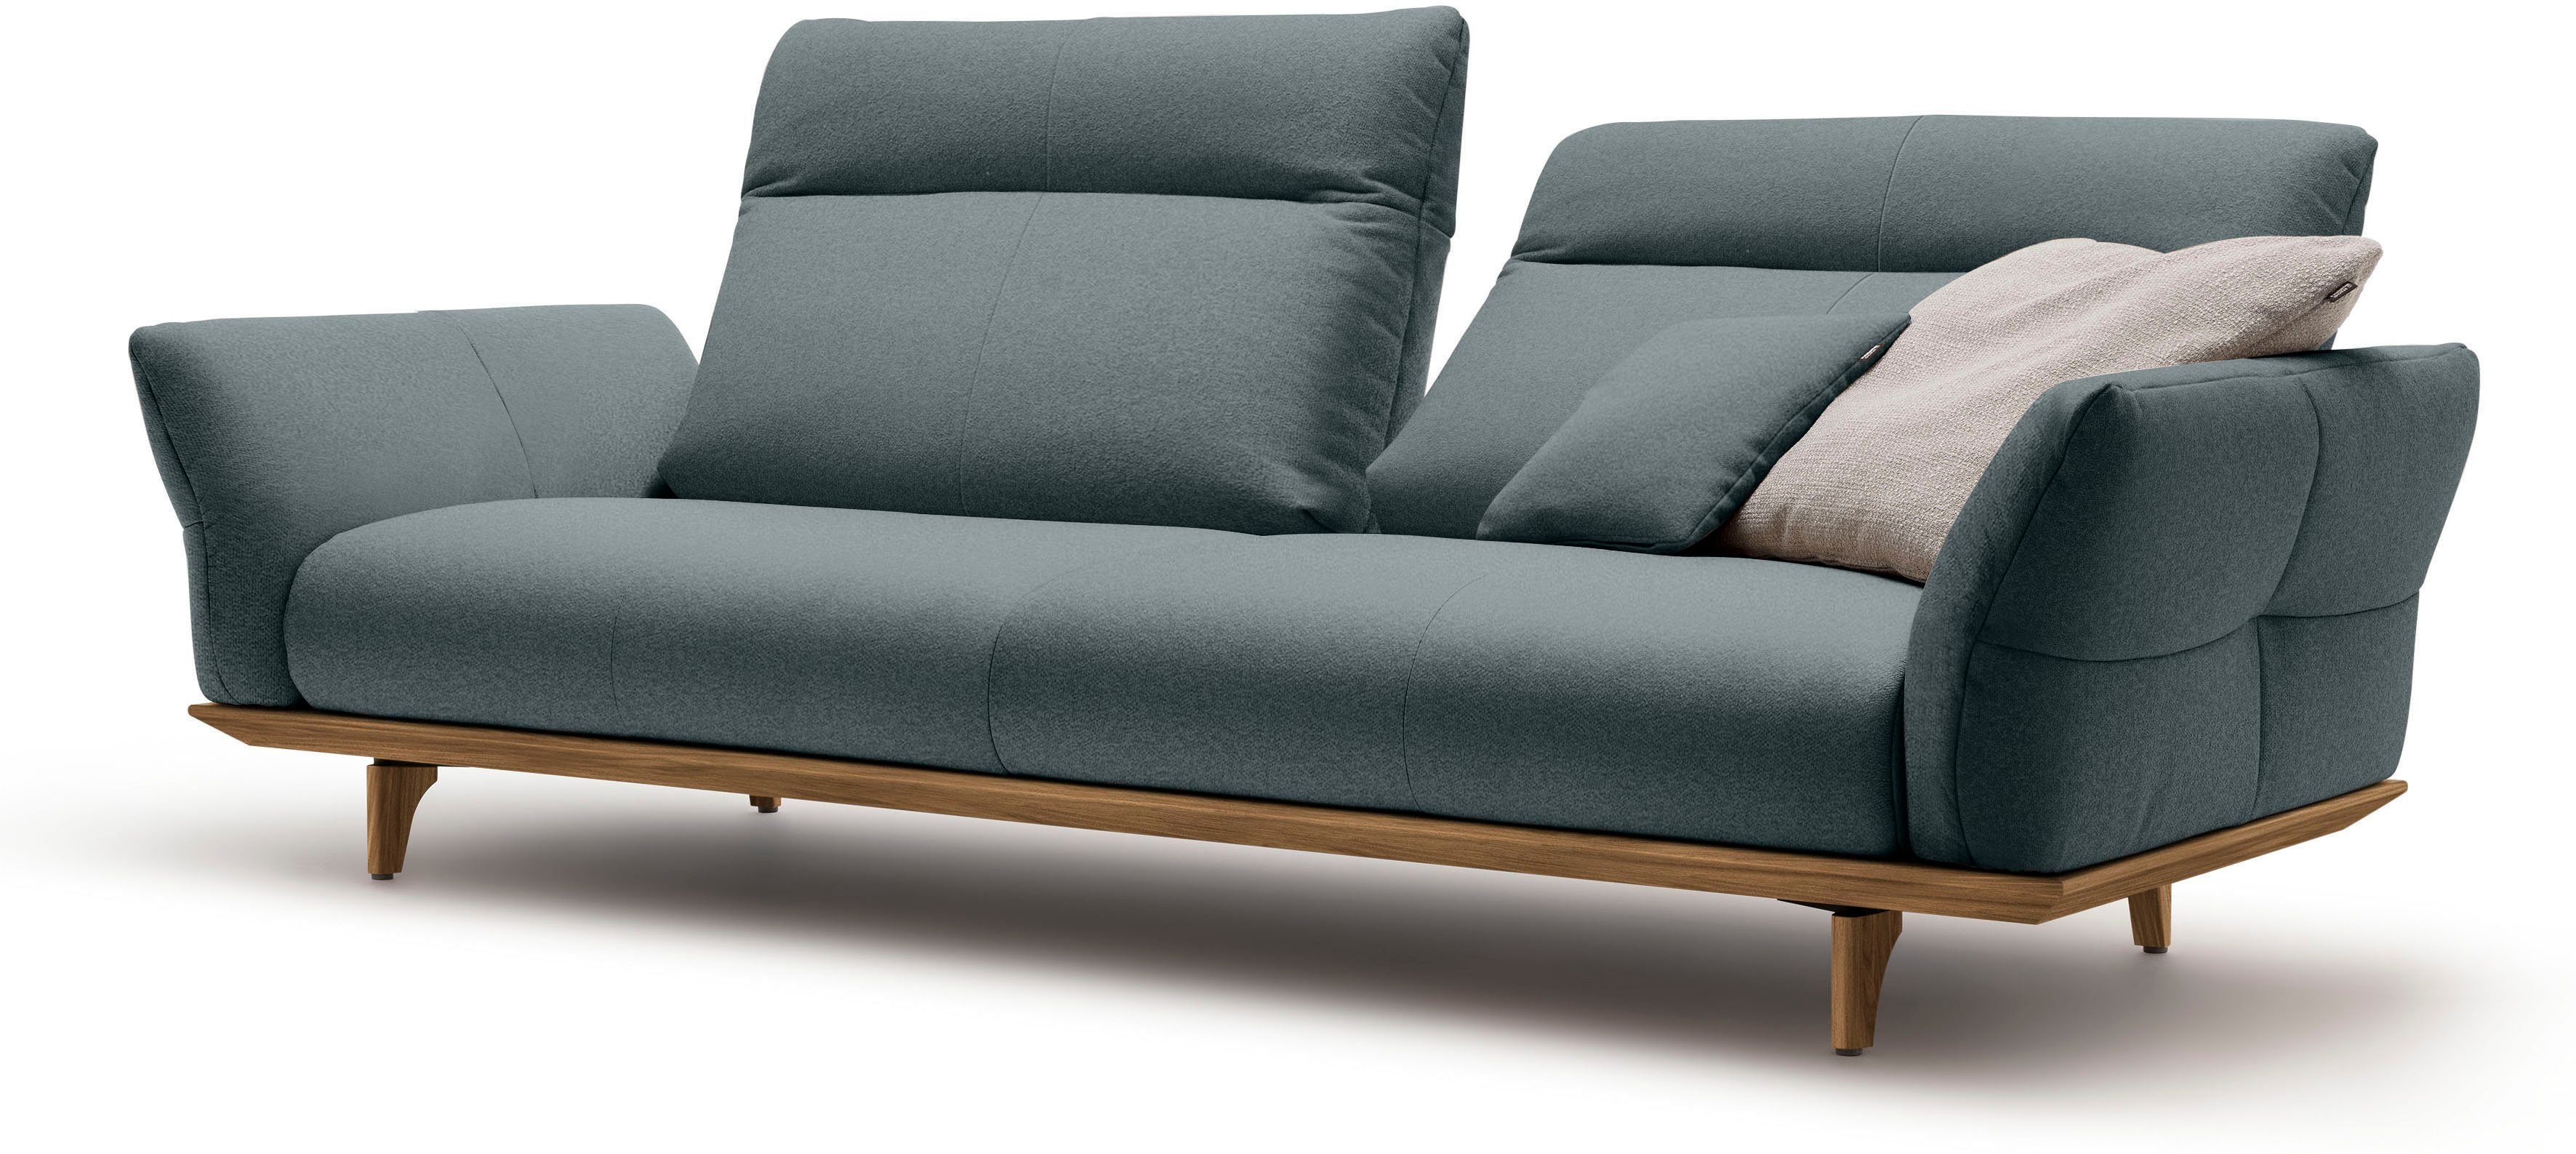 hülsta sofa Breite Füße in cm Sockel 228 und Nussbaum, 3,5-Sitzer hs.460